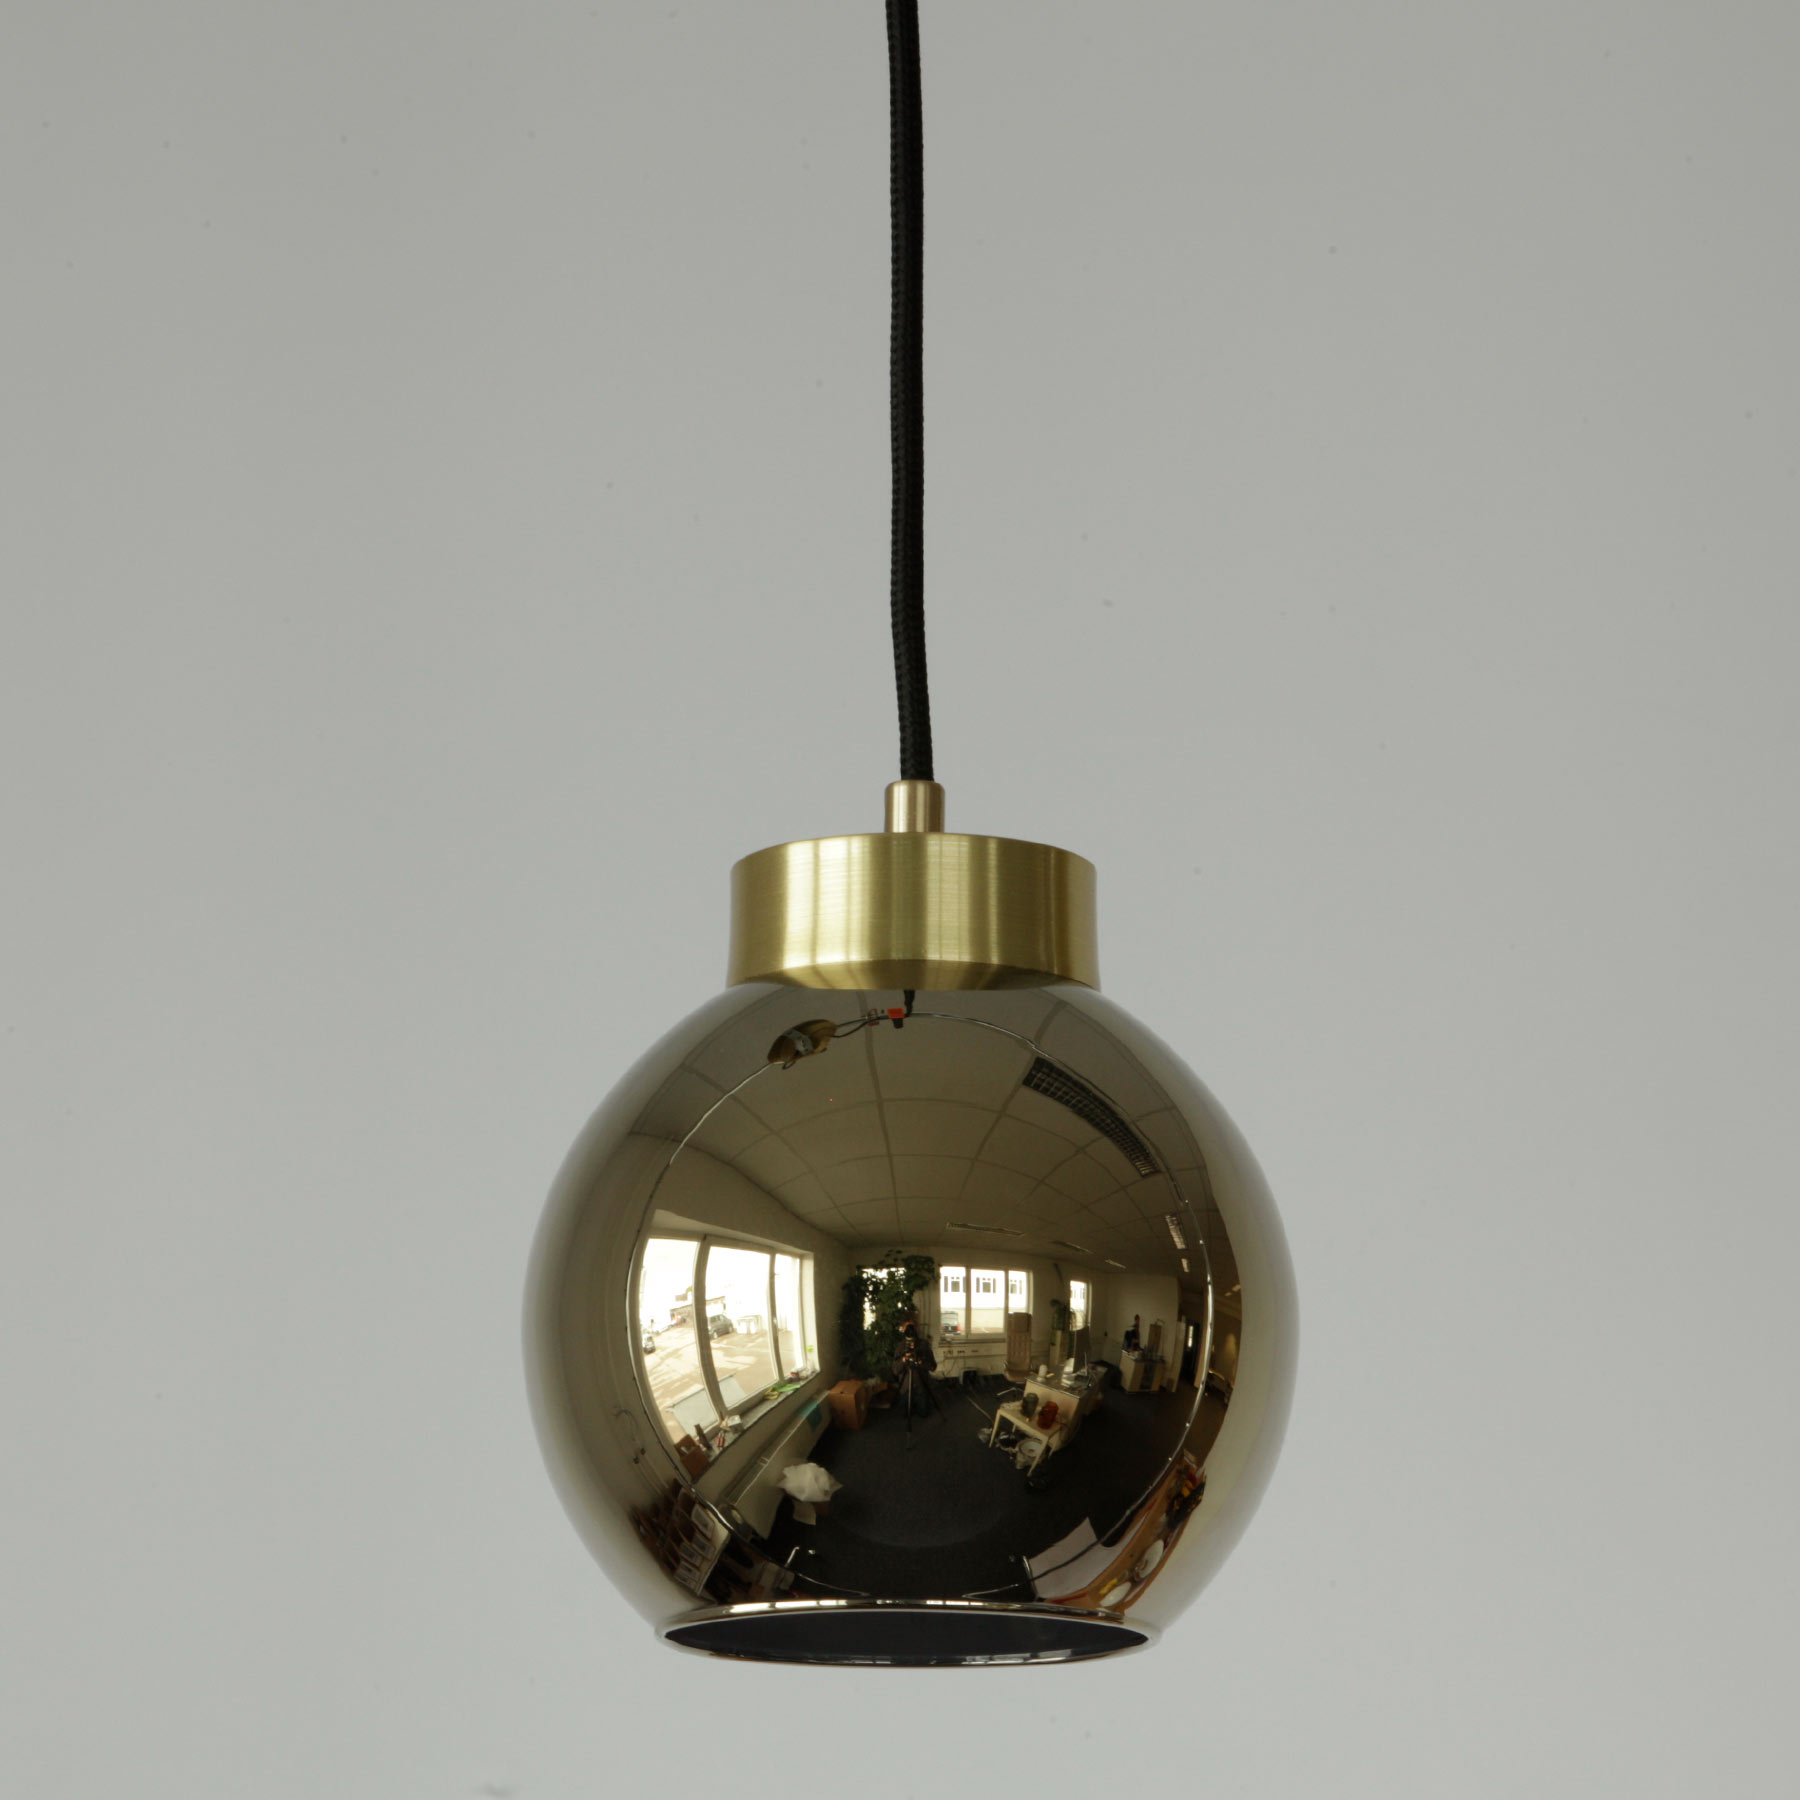 Kugel-Pendelleuchte aus Spiegel-Glas (gold/silbern/kupfern) Ø 15–30 cm: Kleine goldene Kugel-Hängeleuchte: faszinierender hochglanz-Spiegeleffekt (Ø 15 cm)